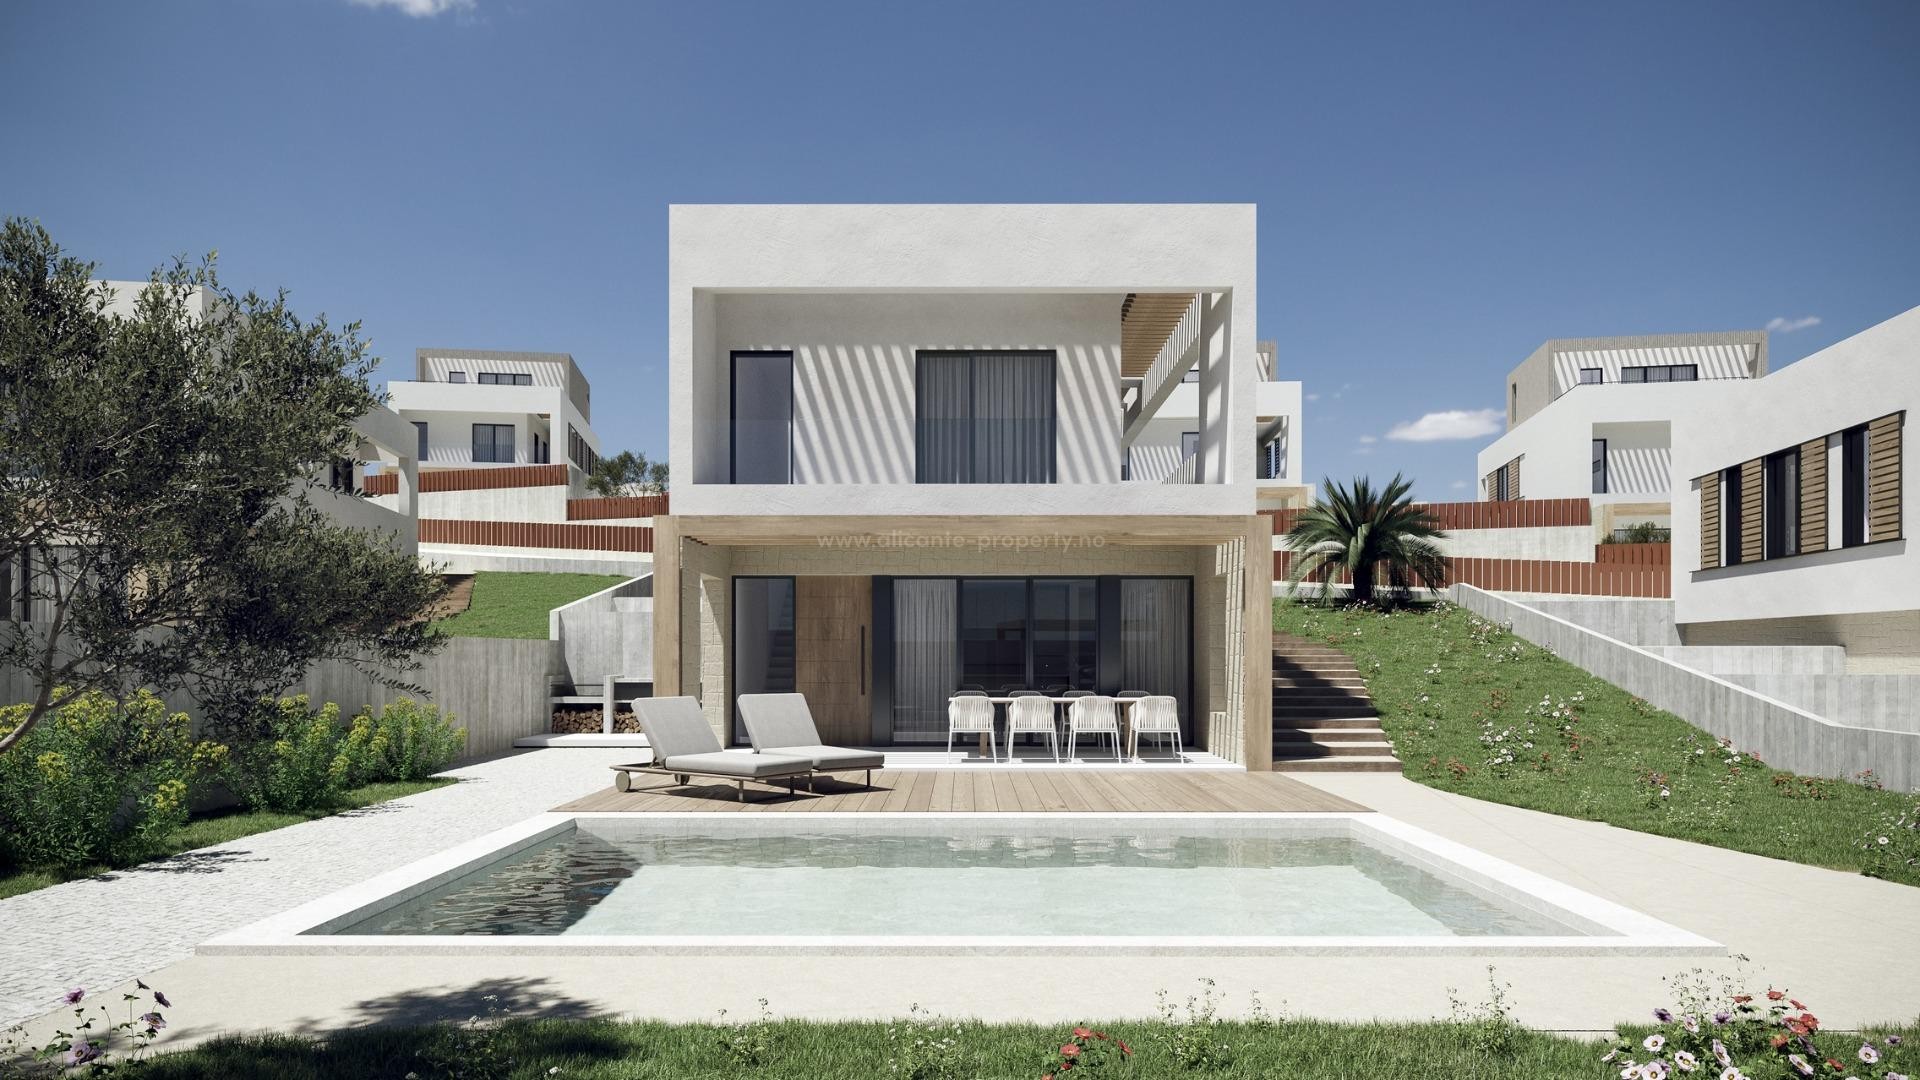 Villa/hus i Campana Garden, Finestrat, 3 soverom, 3 bad, terrasse med fantastisk utsikt over Benidorm, privat hage med svømmebasseng og parkeringsplass